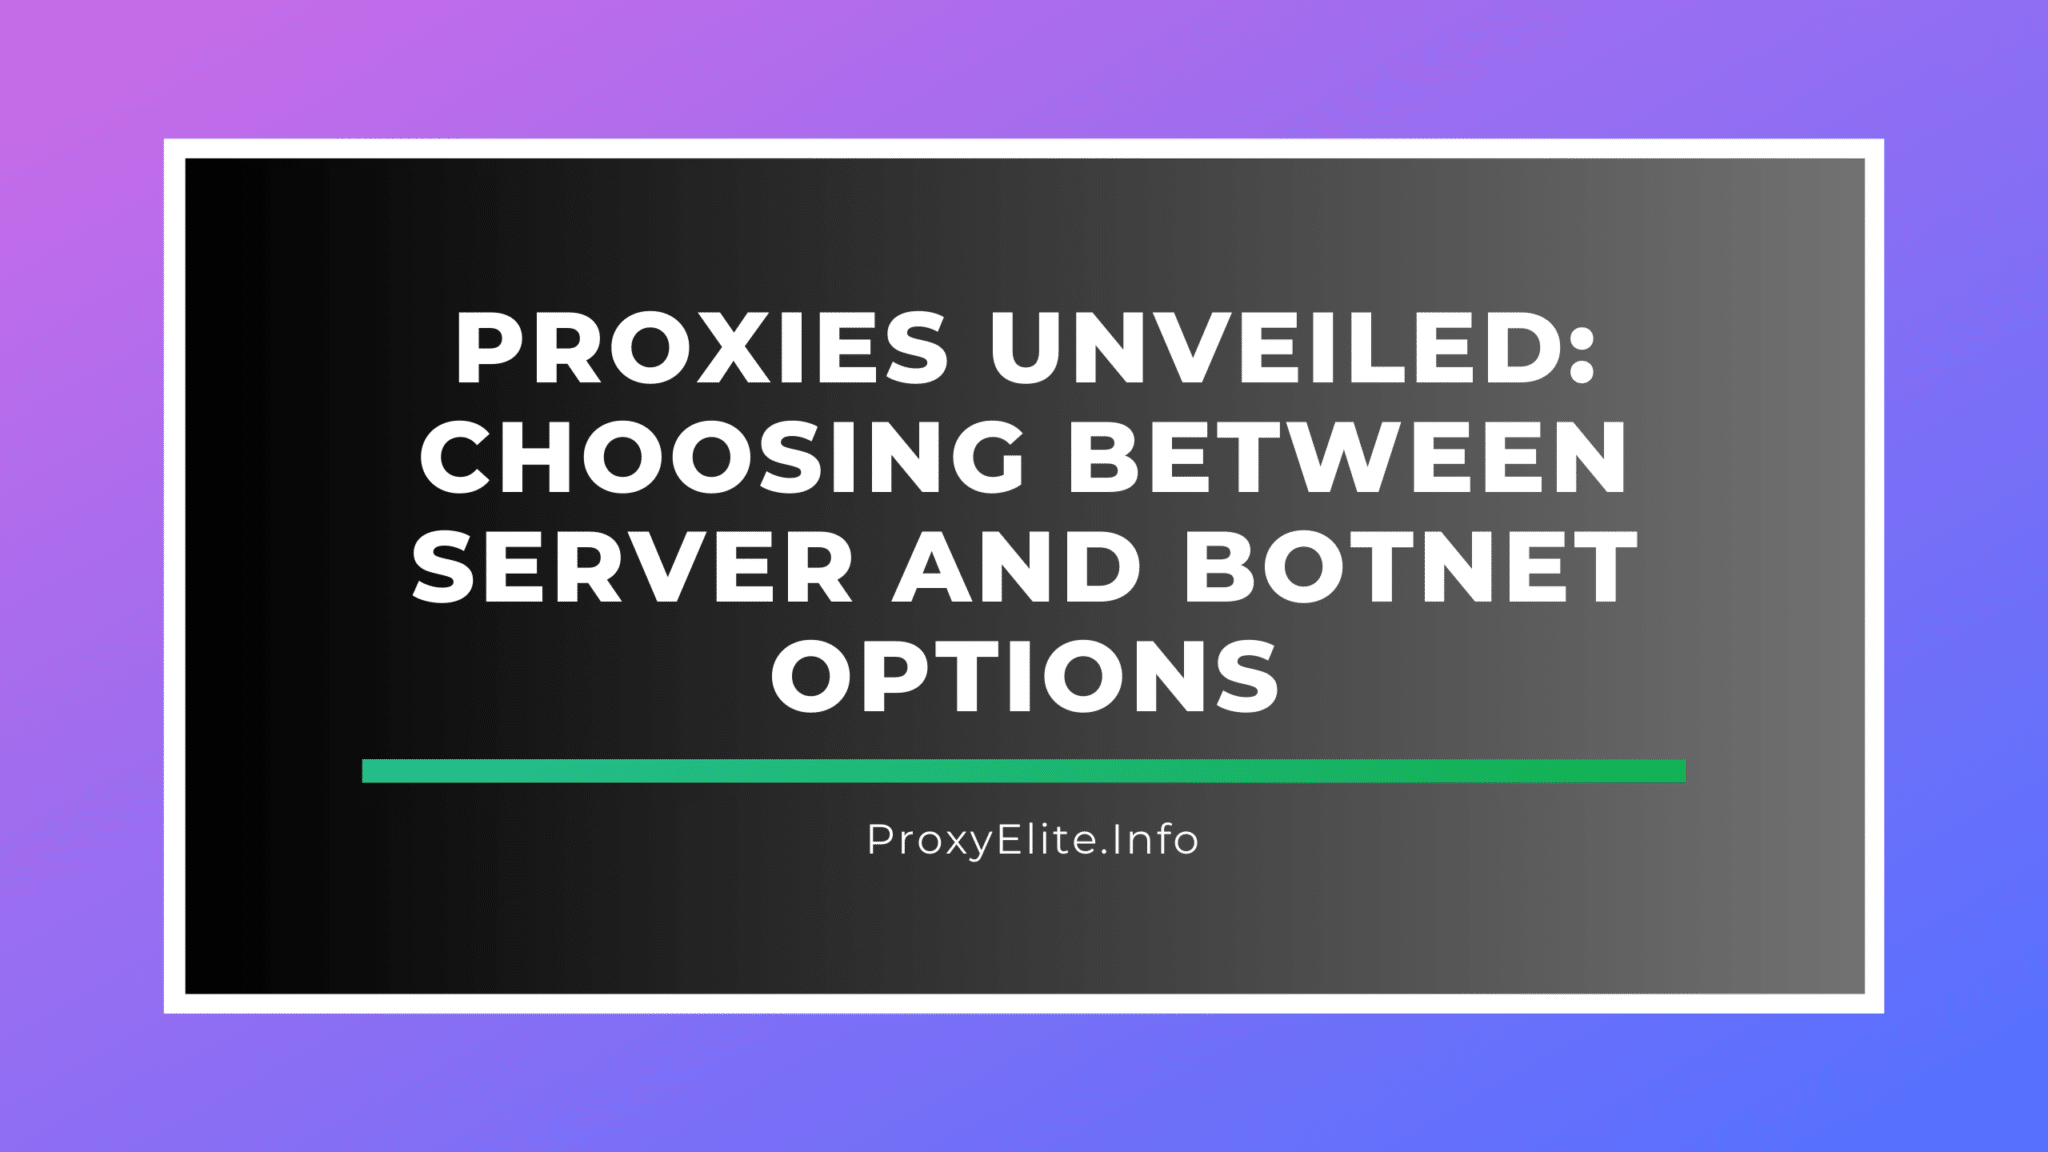 Представлені проксі: вибір між параметрами сервера та ботнету